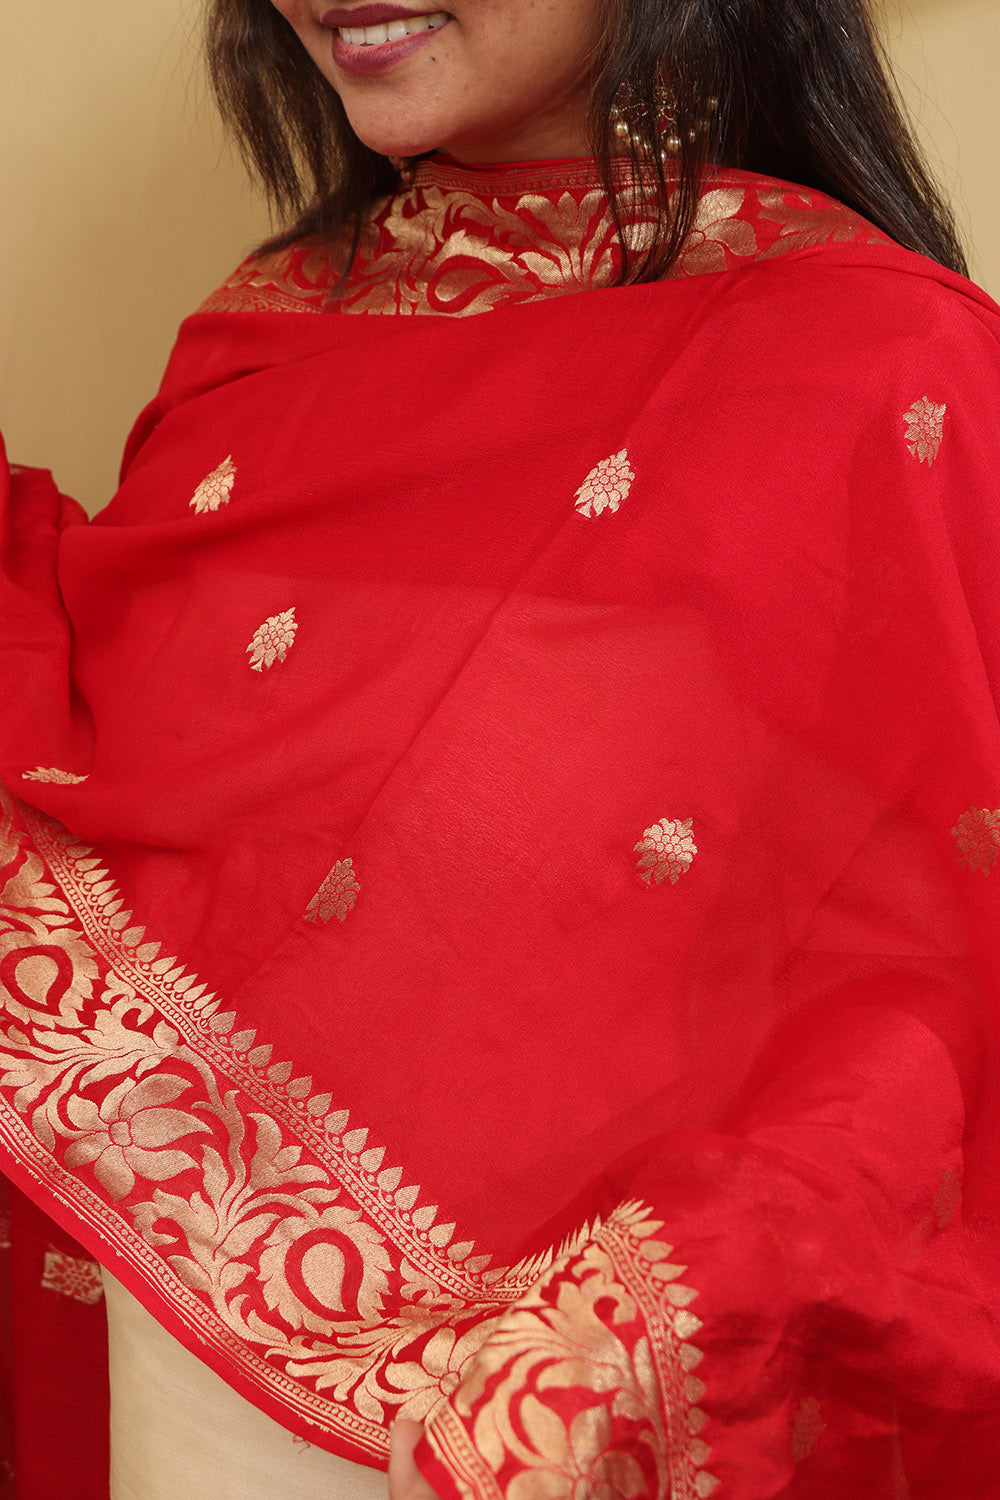 Handloom Banarasi Georgette Dupatta in Red - Luxurion World